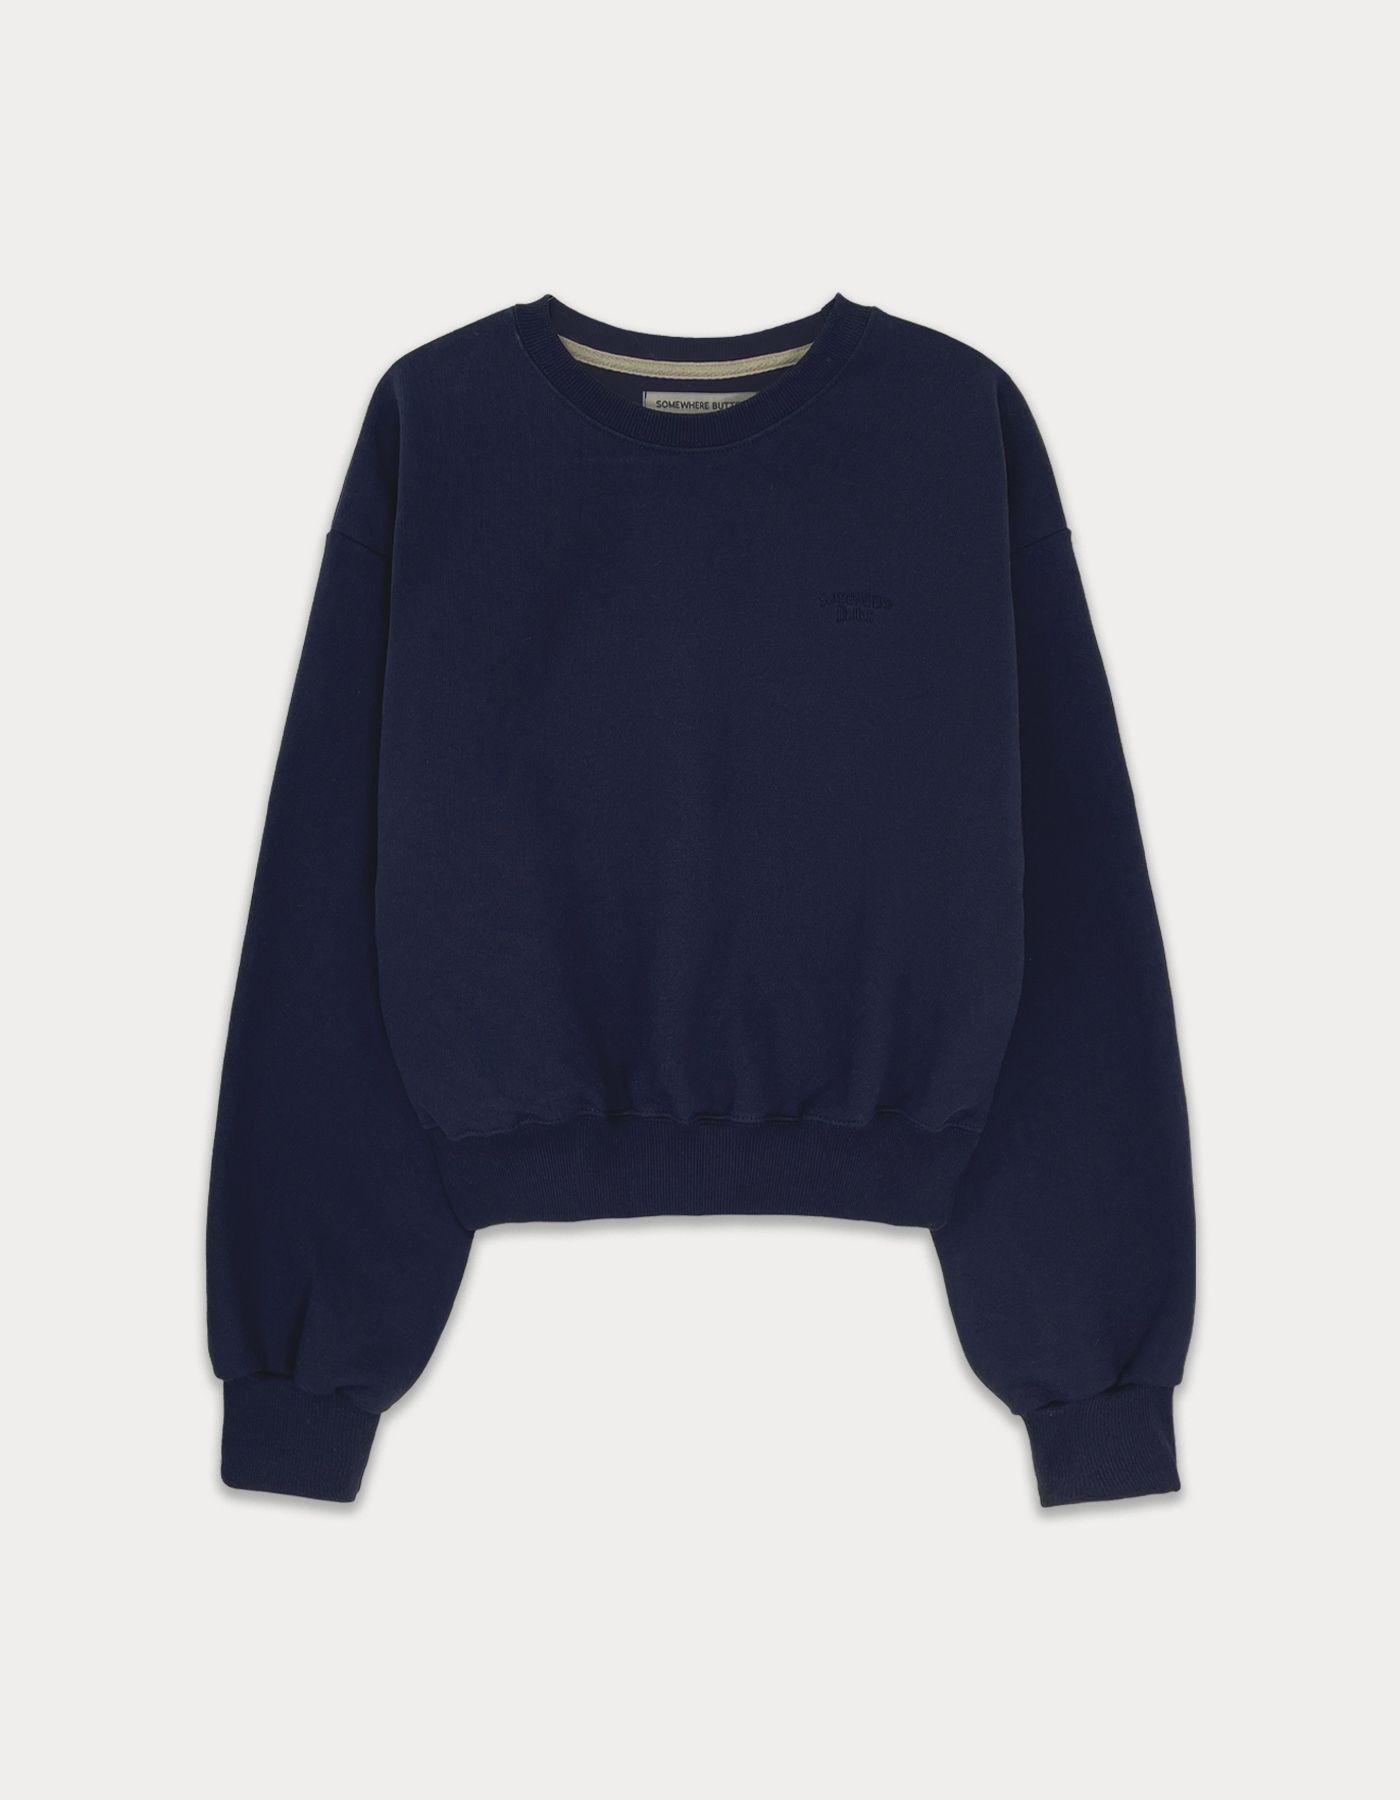 [2nd Order 5.24 출고] Essential sweatshirt - navy